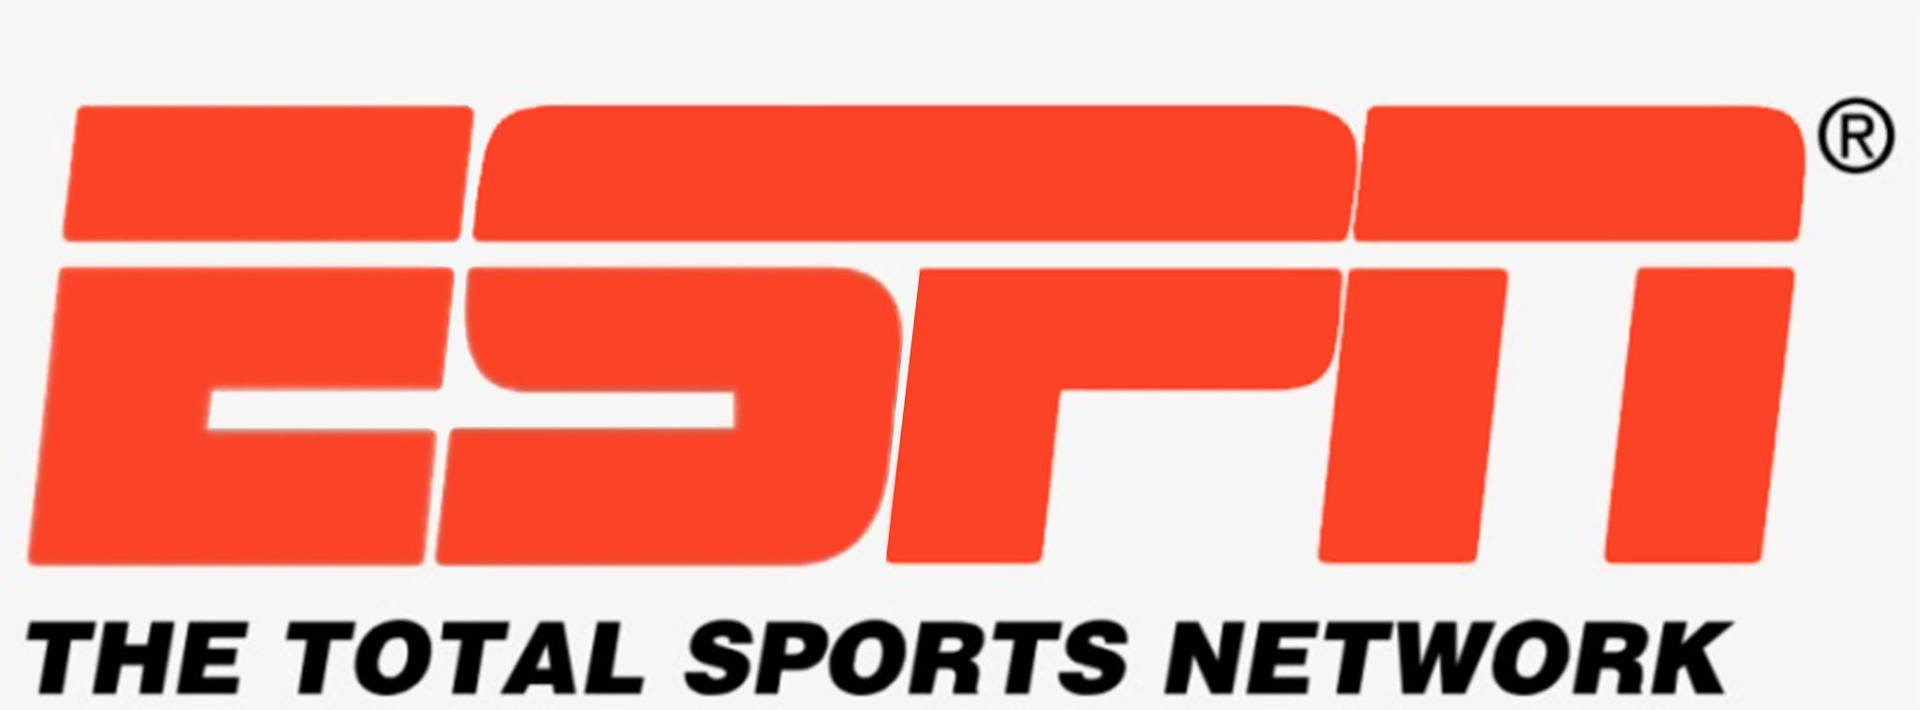 Espn Sports Network Background